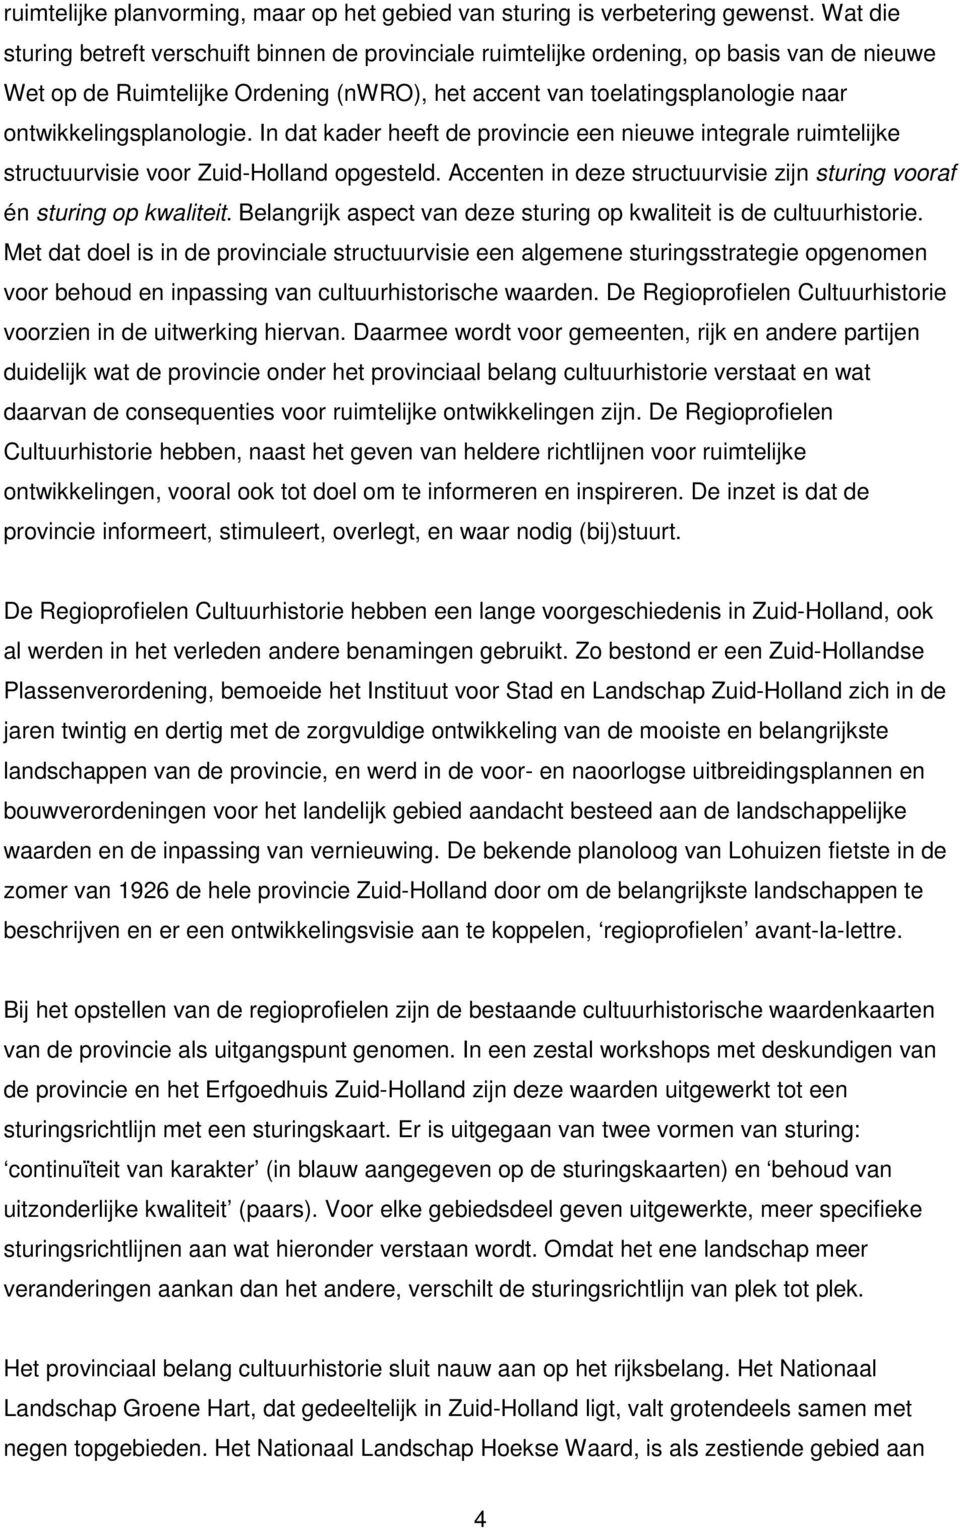 ontwikkelingsplanologie. In dat kader heeft de provincie een nieuwe integrale ruimtelijke structuurvisie voor Zuid-Holland opgesteld.